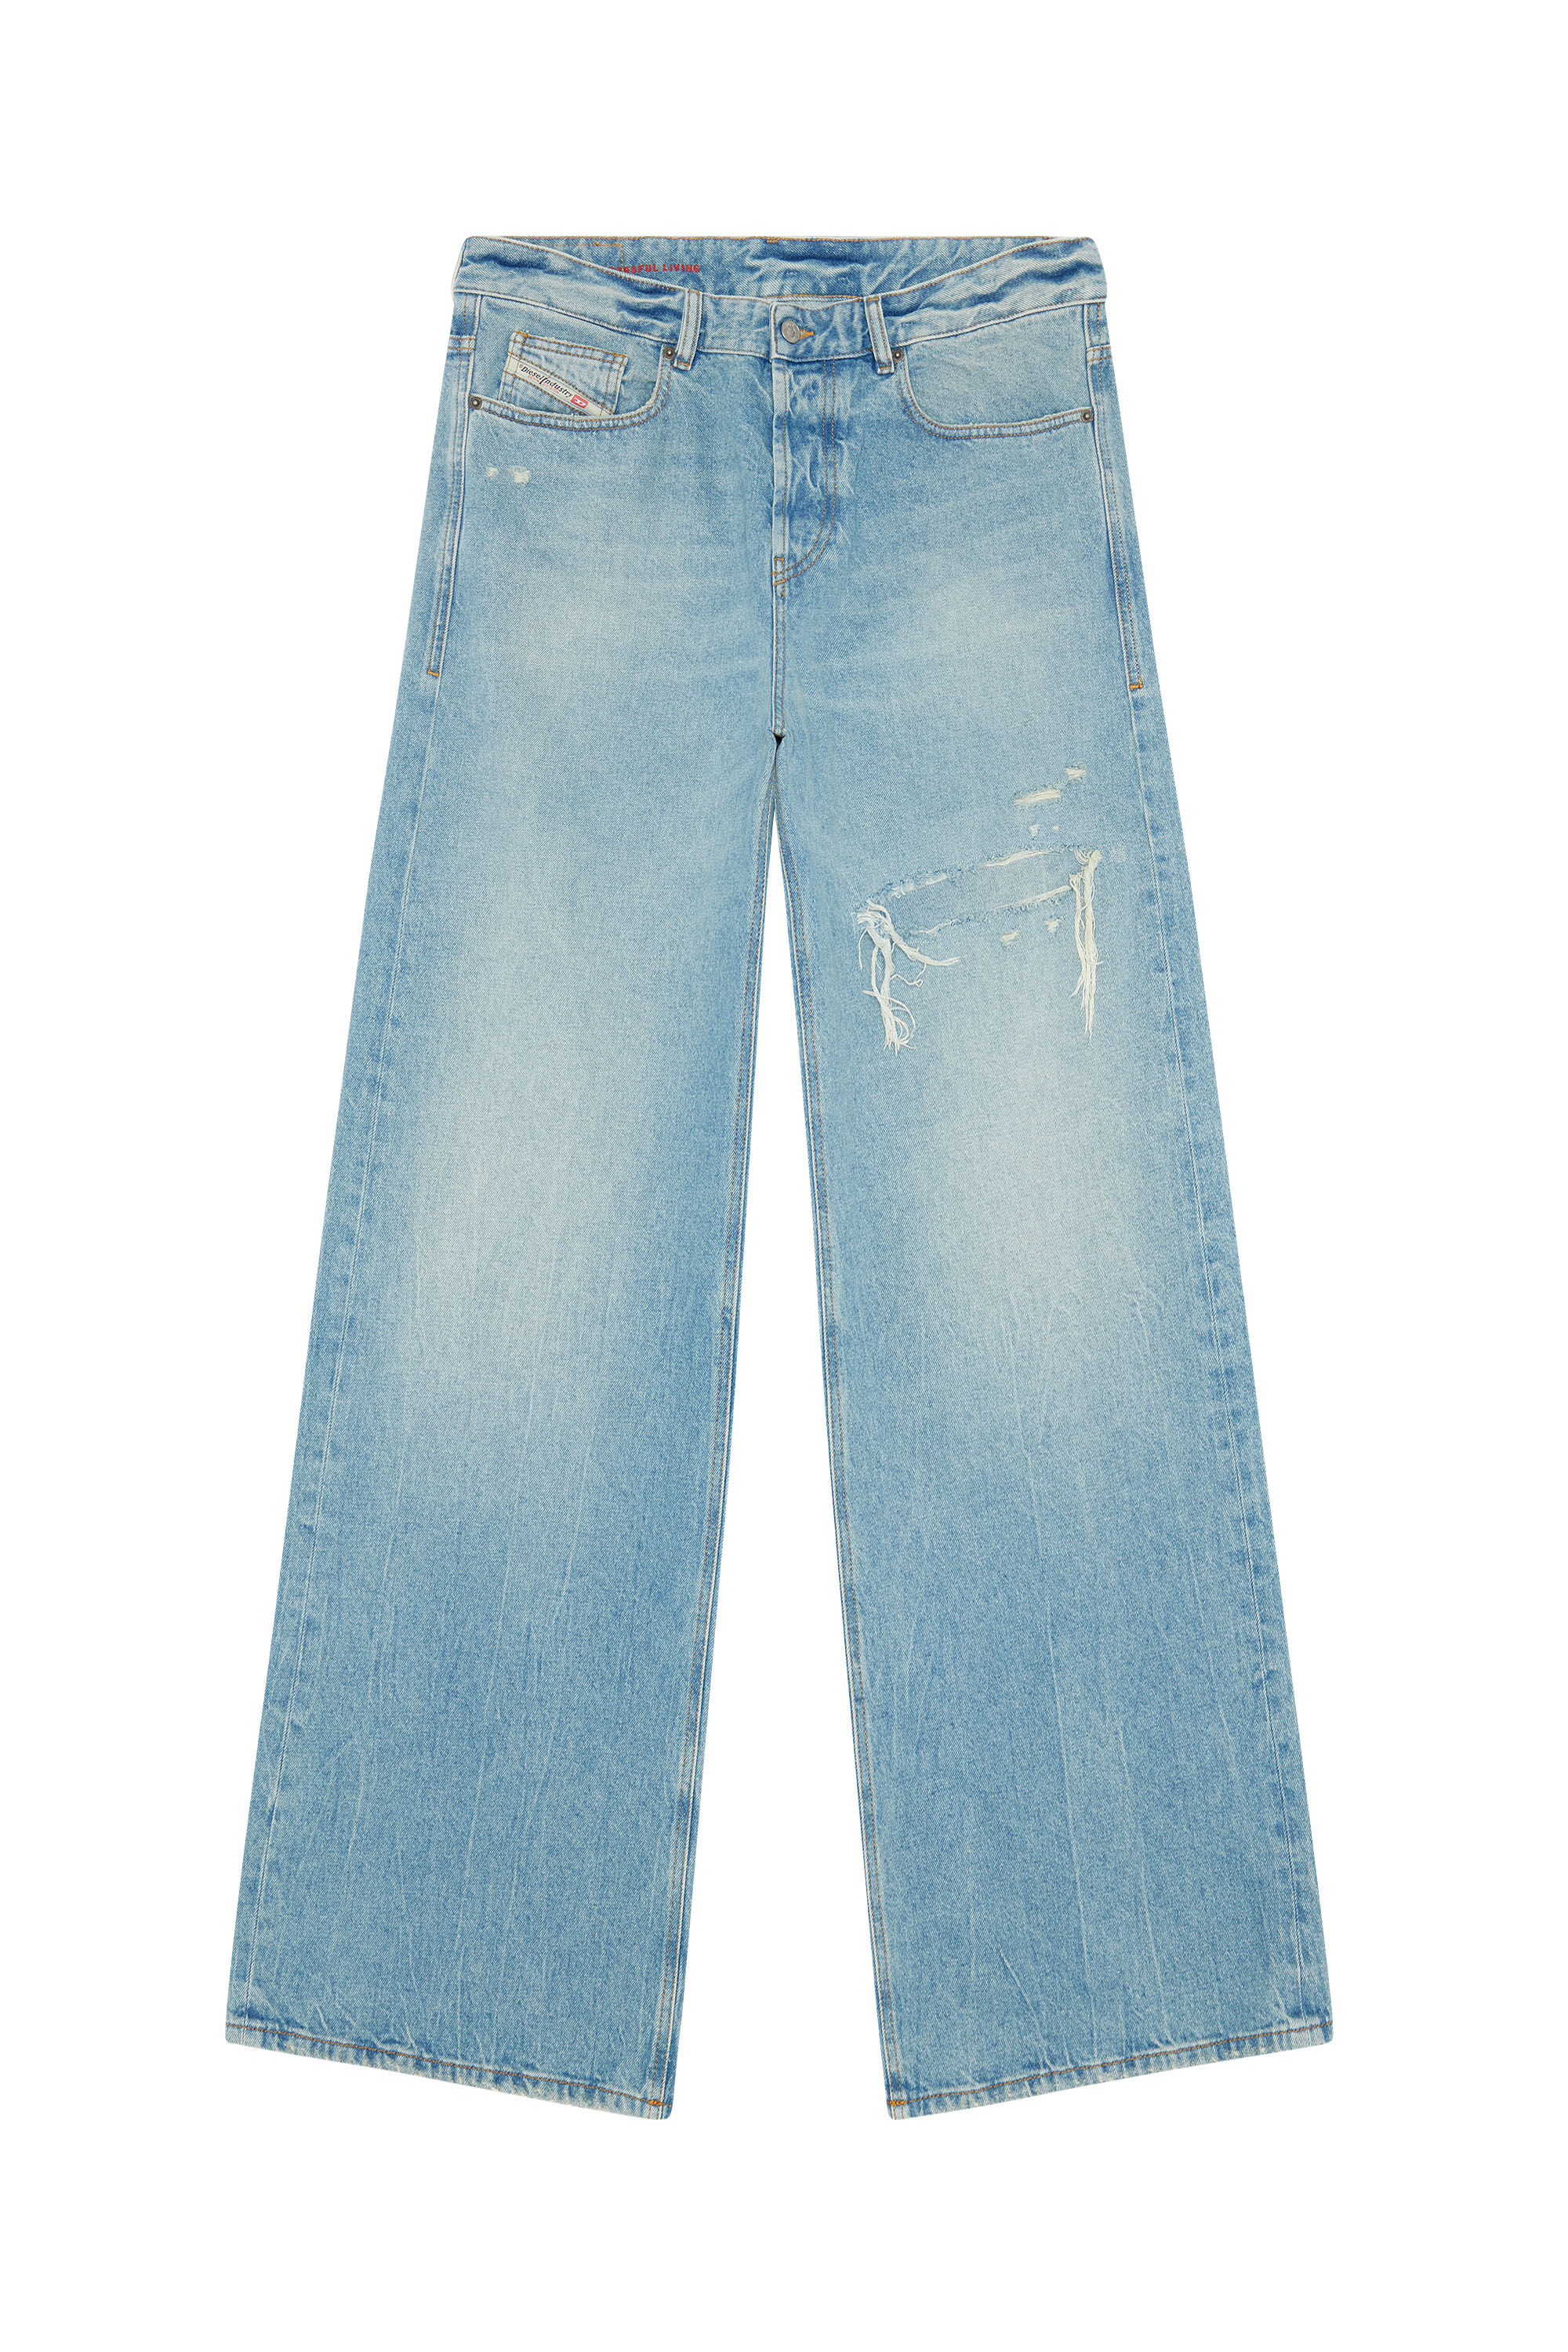 D-Rise Men: Oversized Light blue Straight Baggy Jeans | Diesel